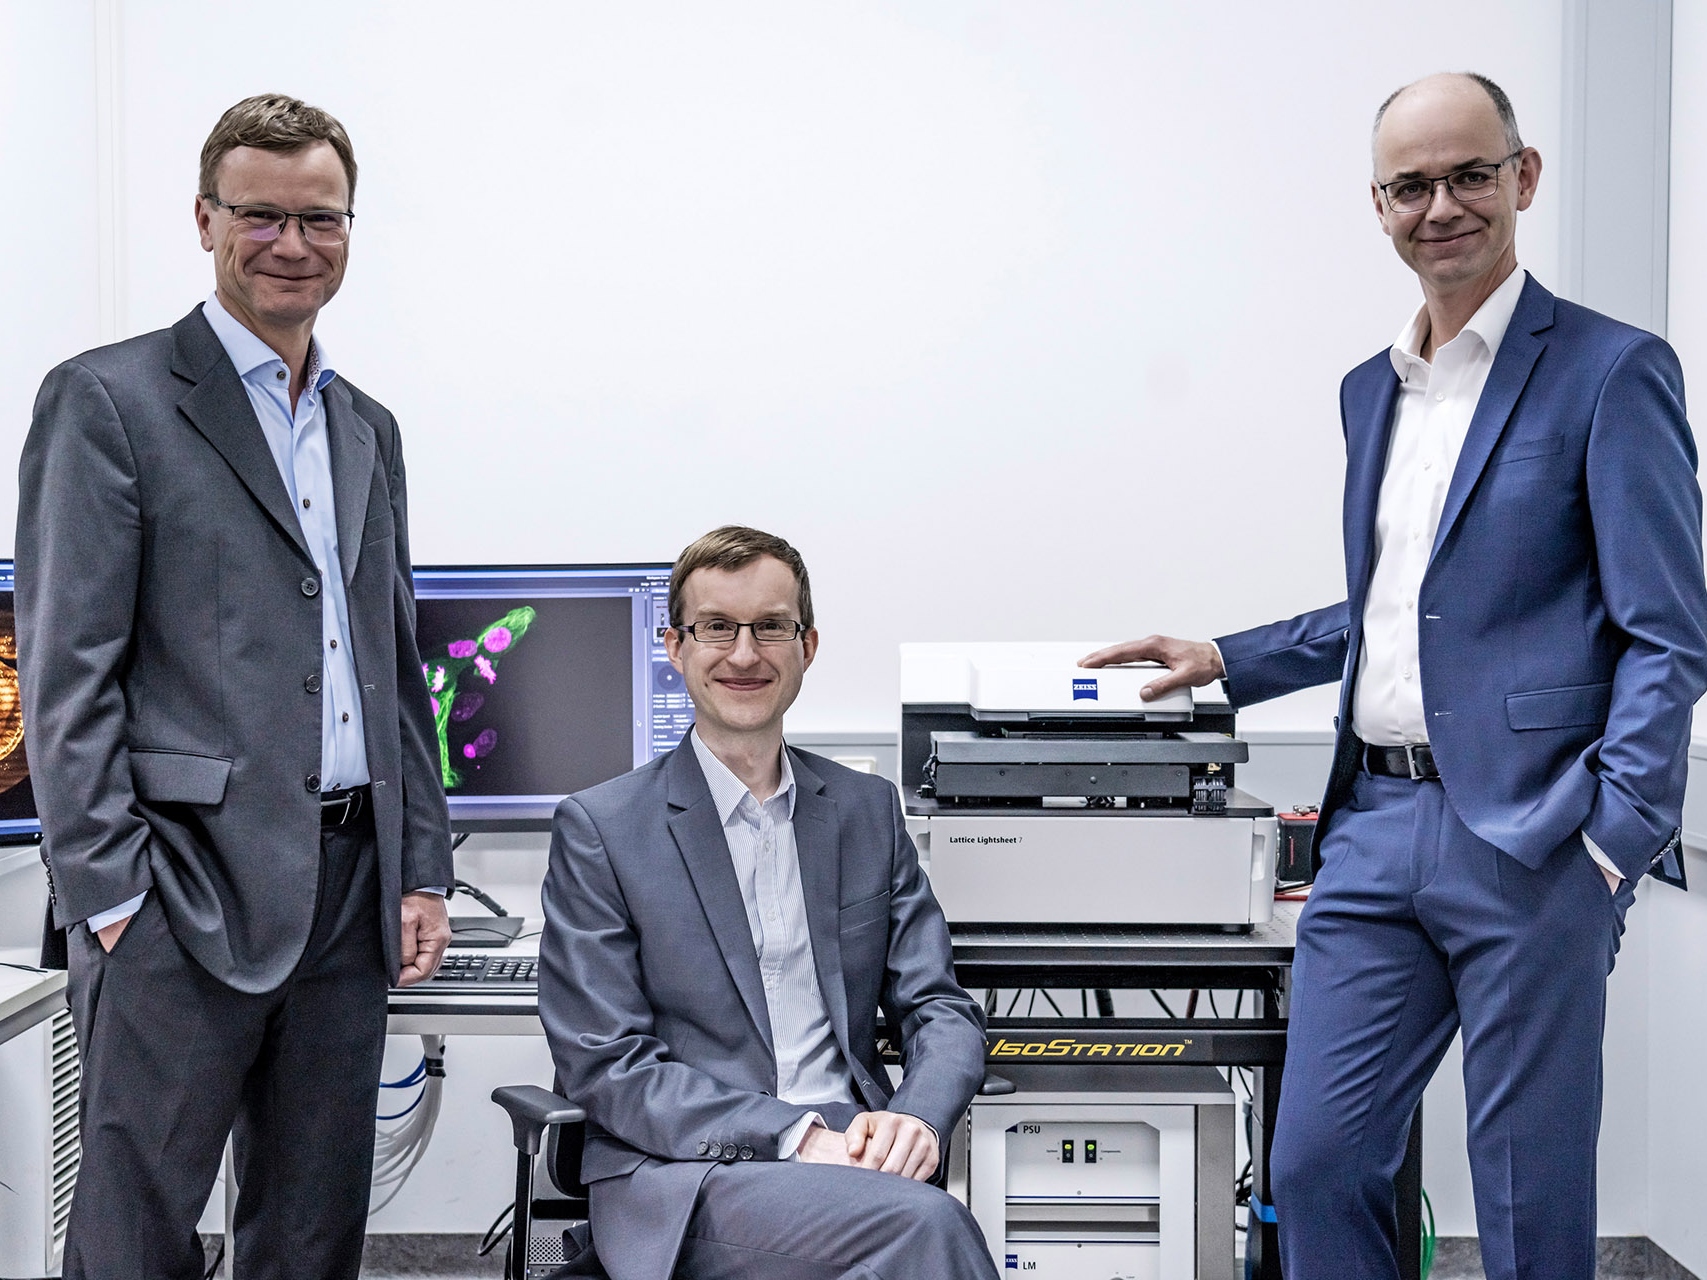 ZEISS microscope developers win the Deutscher Zukunftspreis 2022